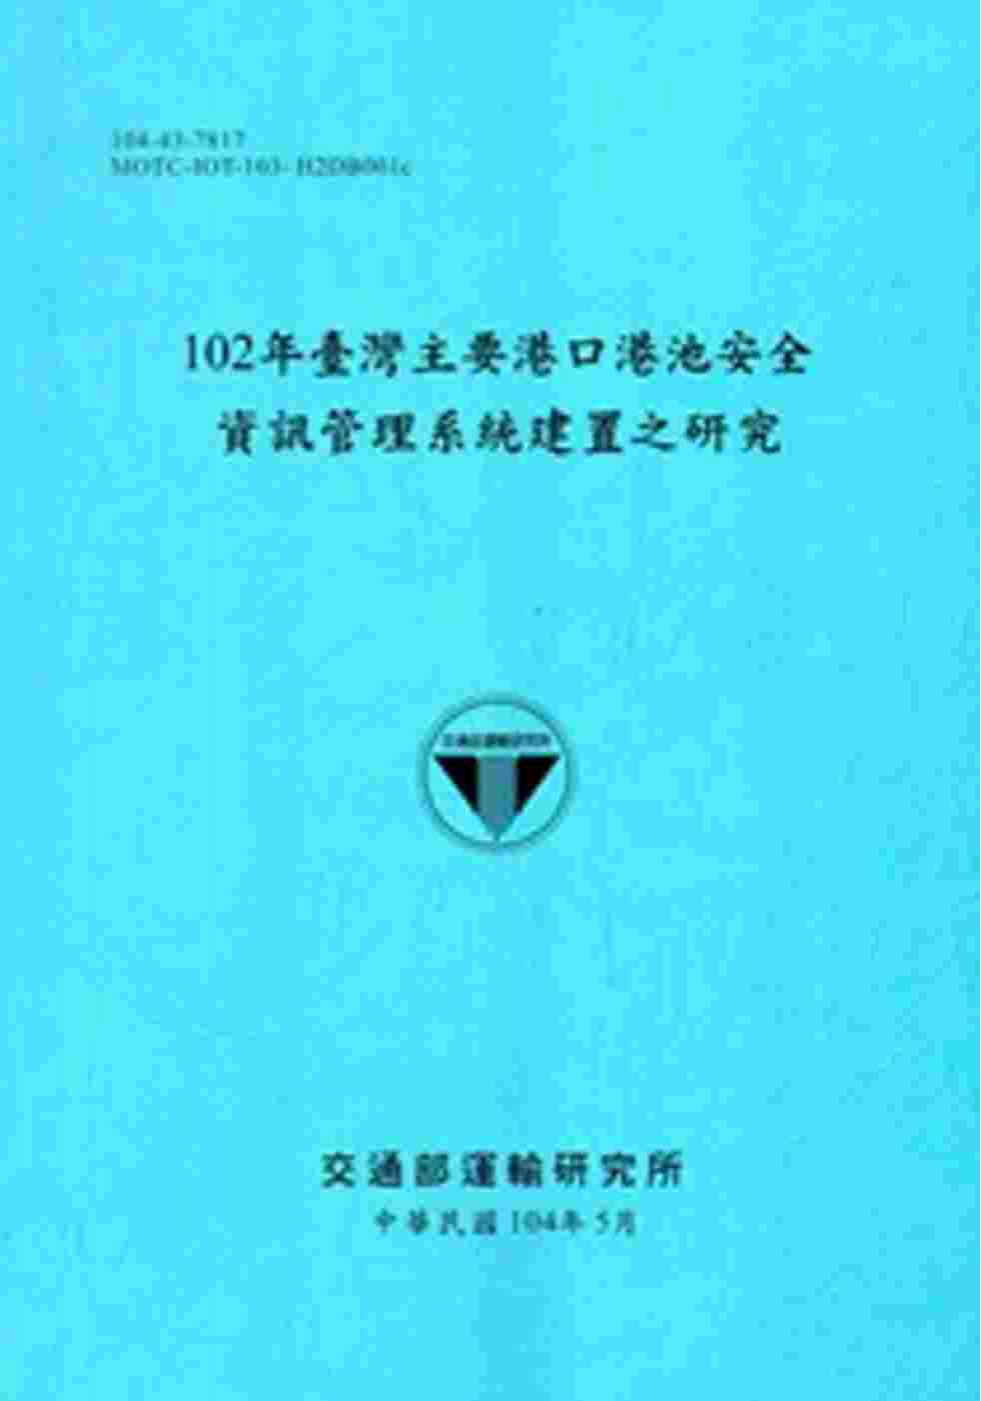 102年臺灣主要港口港池安全資訊管理系統建置之研究[104藍]